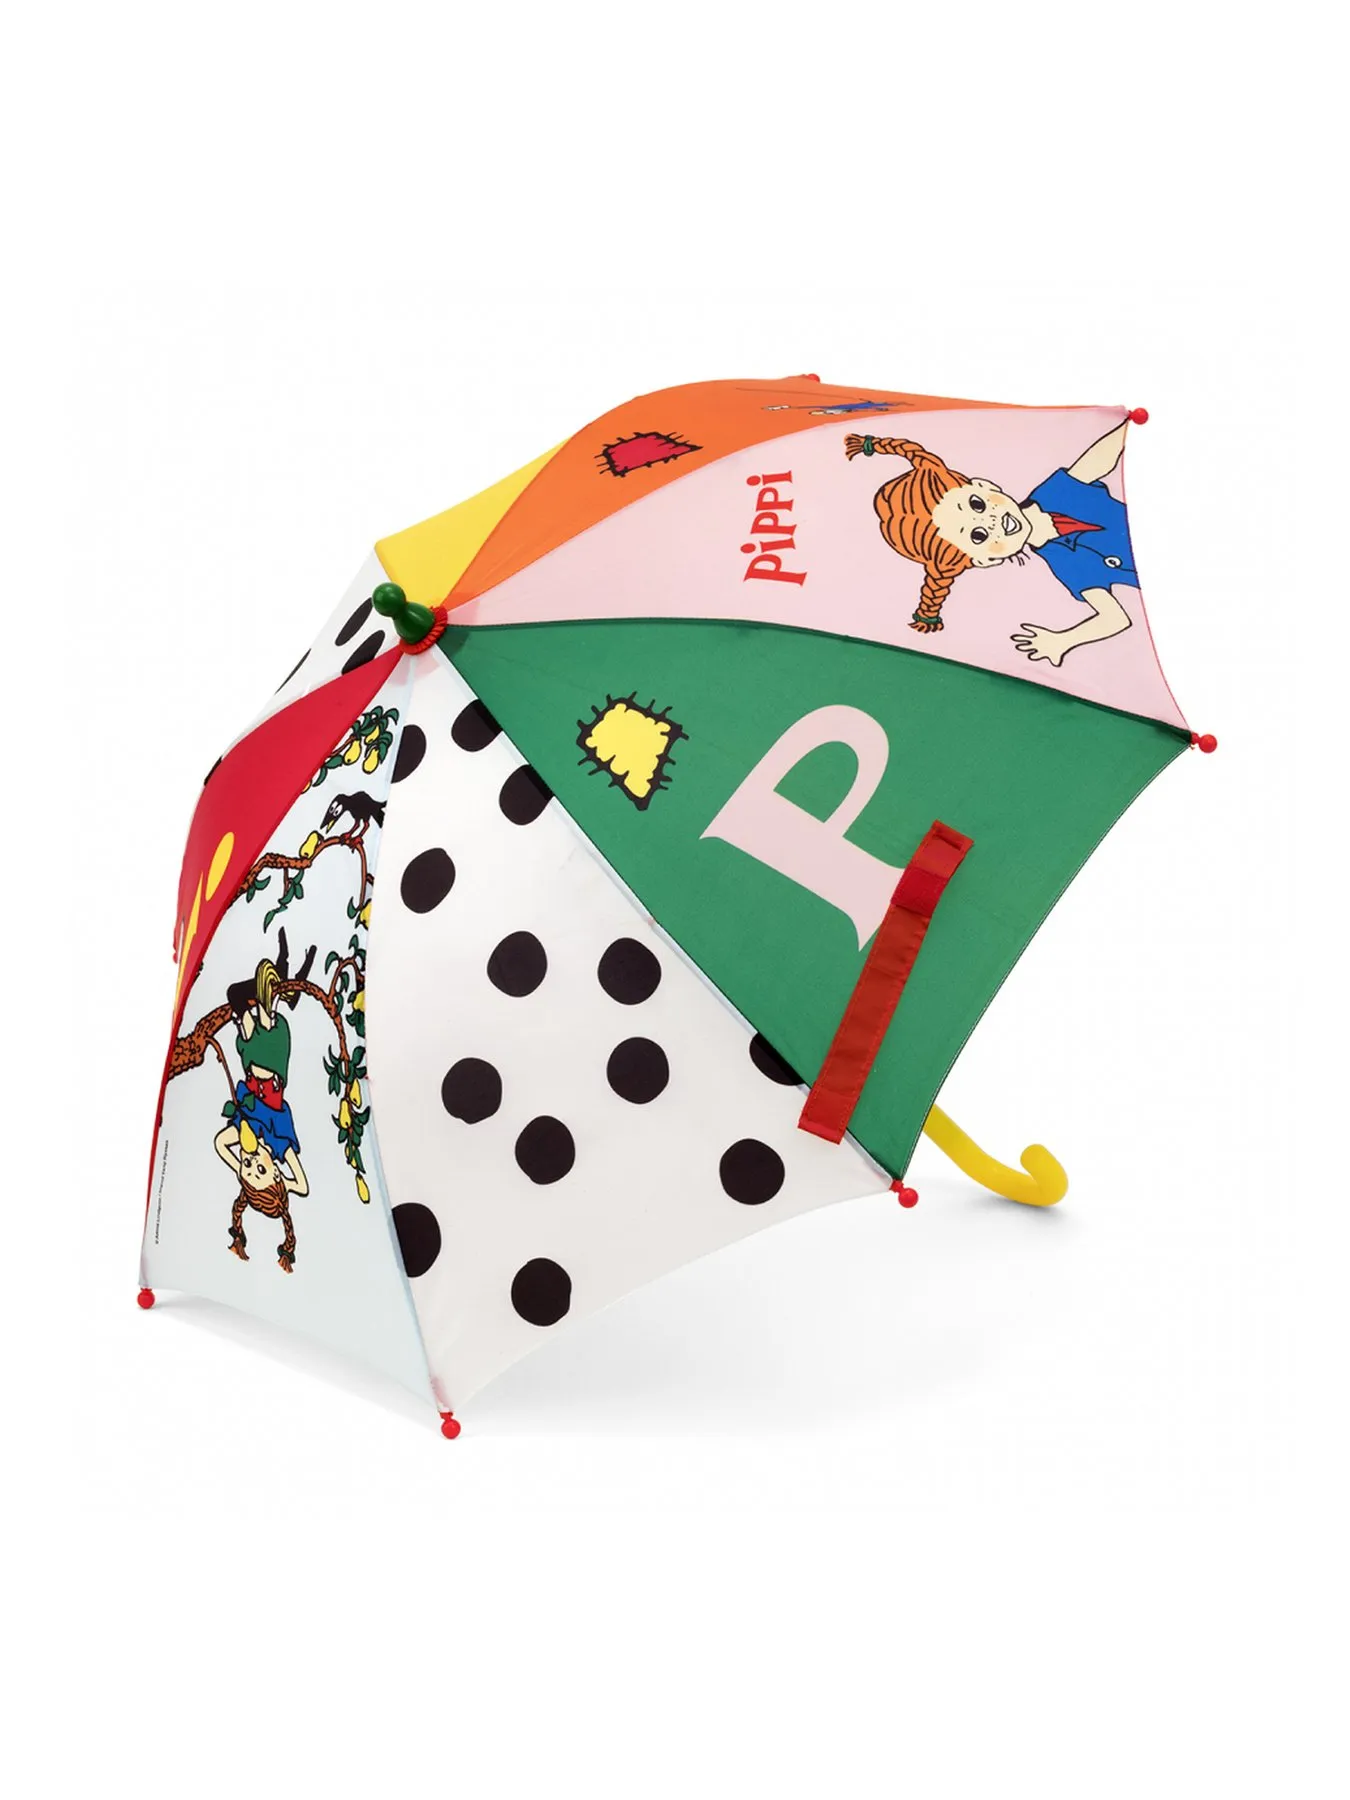 Regenschirm Pippi Langstrumpf